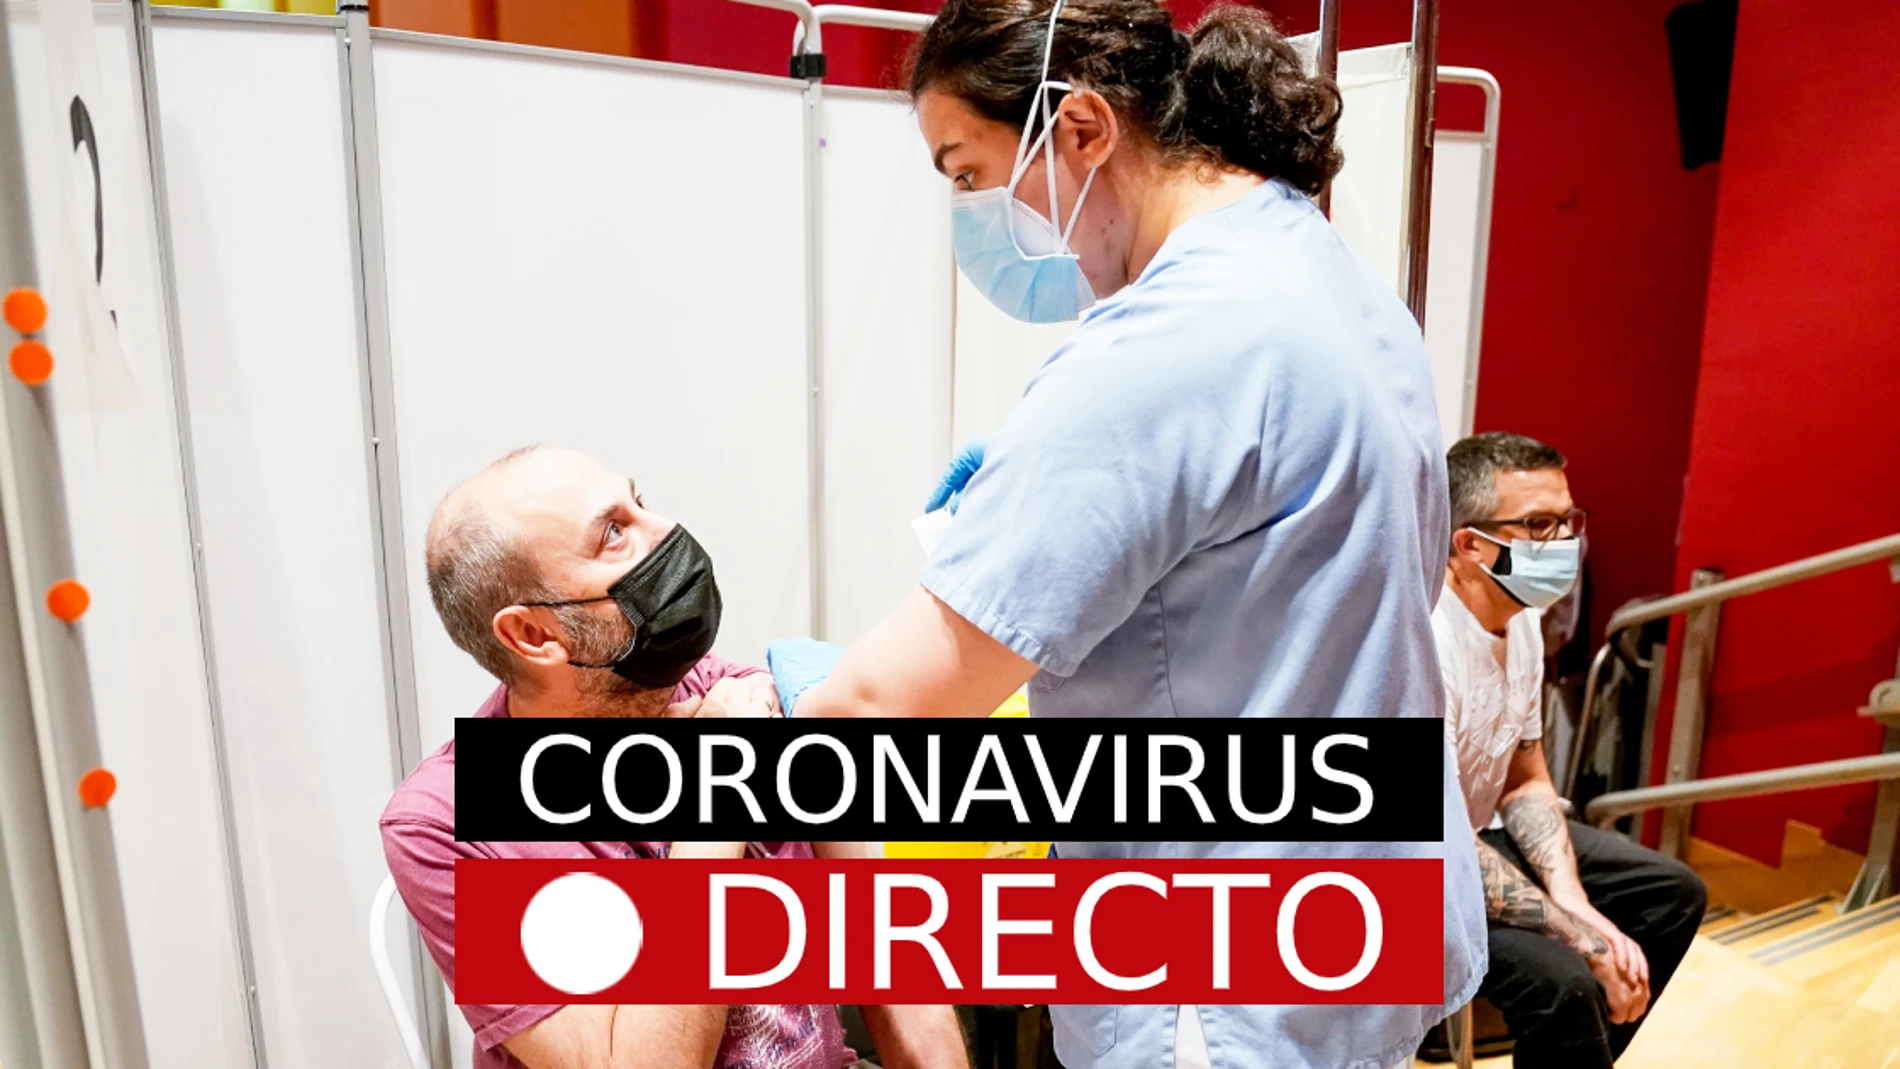 Última hora de COVID-19 en España: Nuevas restricciones y vacuna de coronavirus, hoy